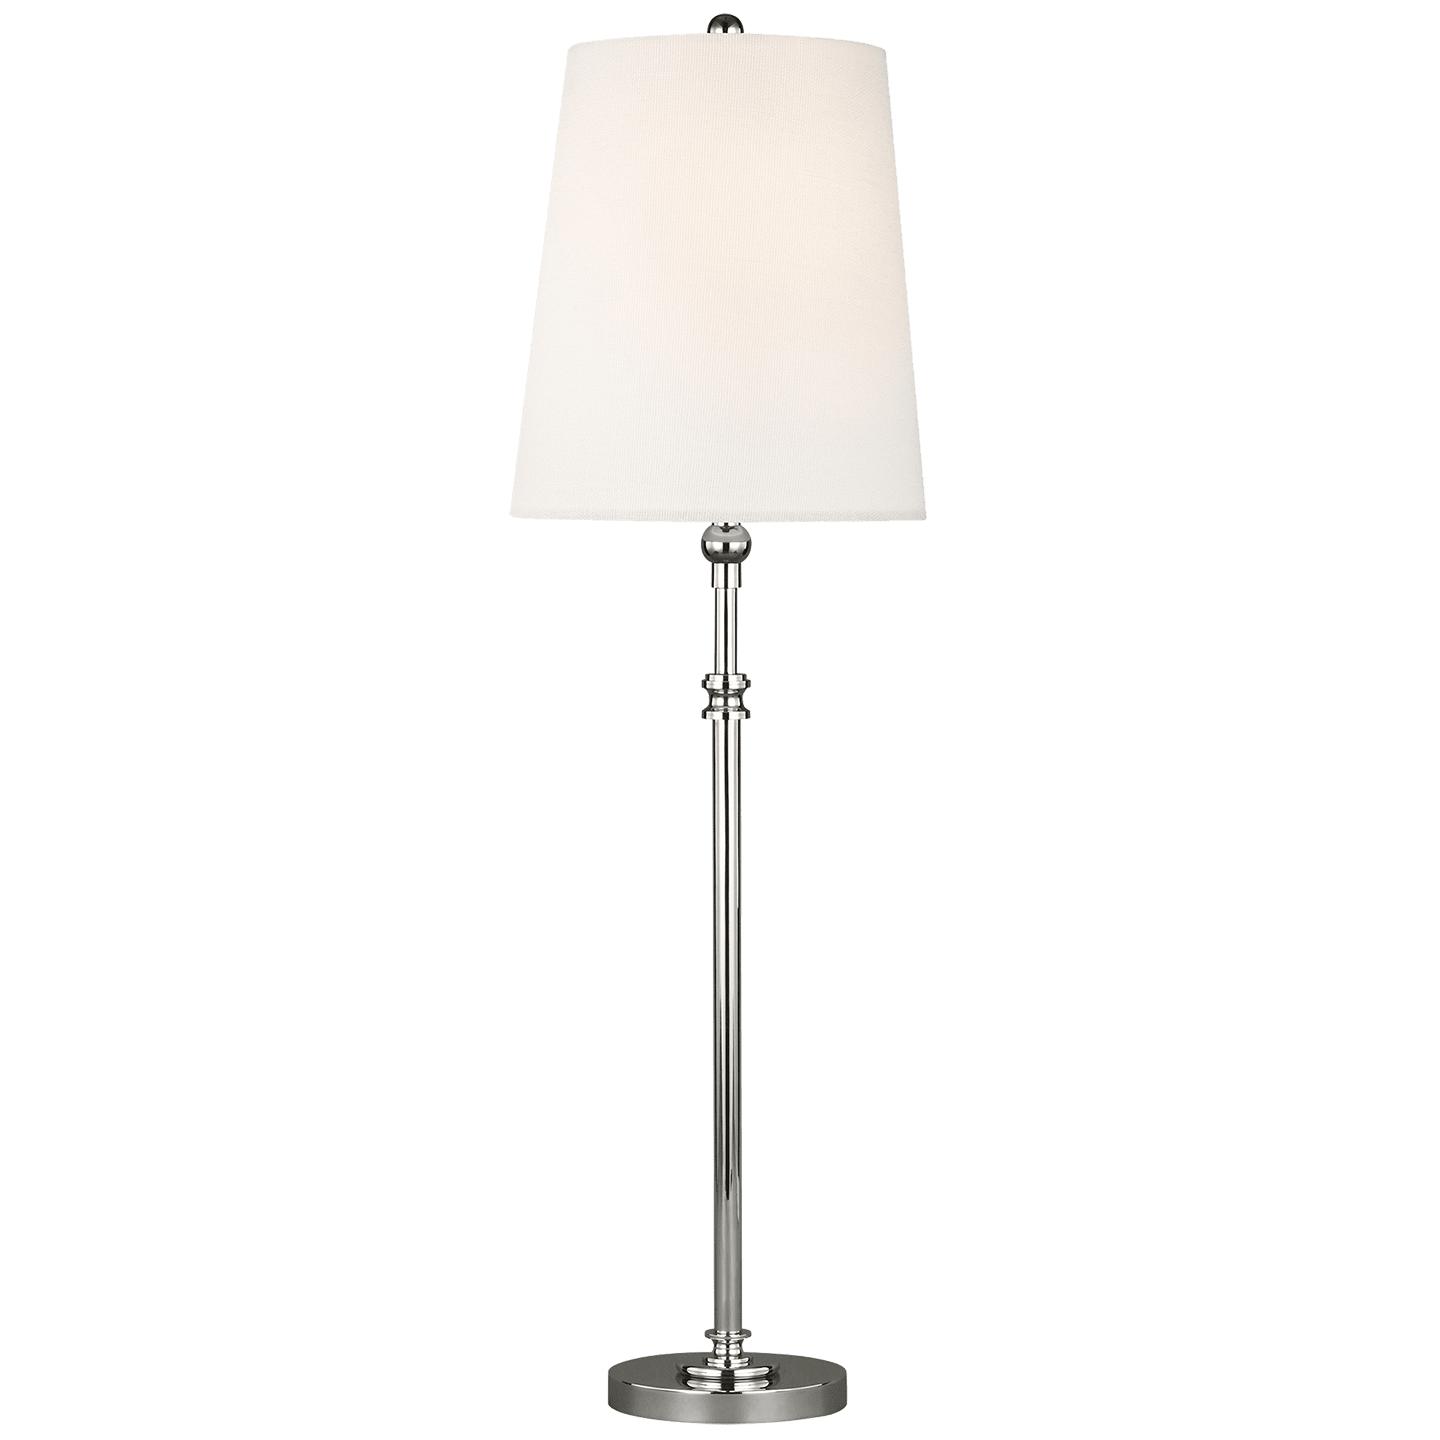 Купить Настольная лампа Capri Buffet Lamp в интернет-магазине roooms.ru